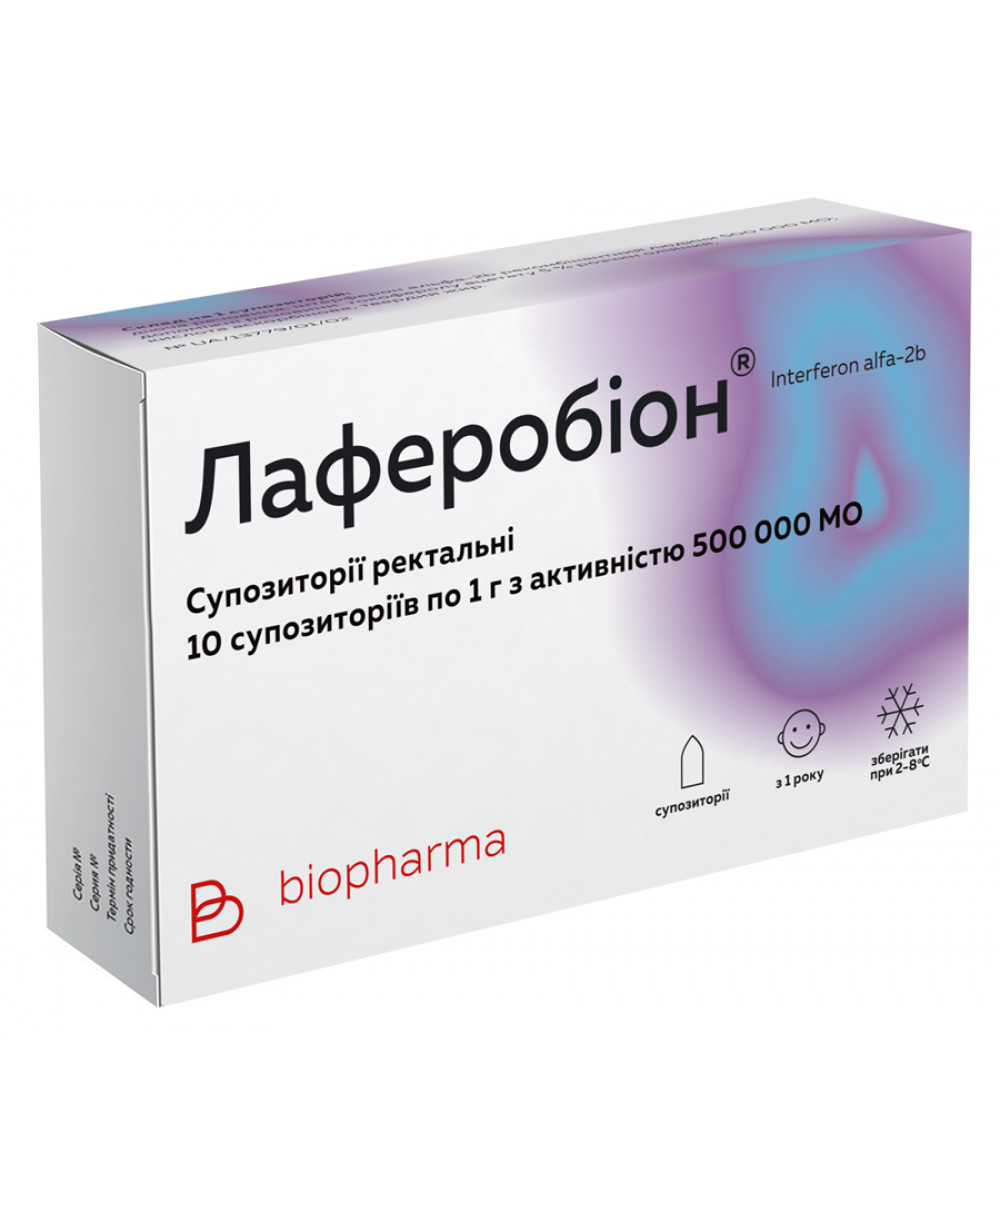 Лаферобион порошок назальный (интерферон альфа-2b) (laferobion)  | поиск, резервирование, заказ лекарств, препаратов в россии +7(499)70-418-70